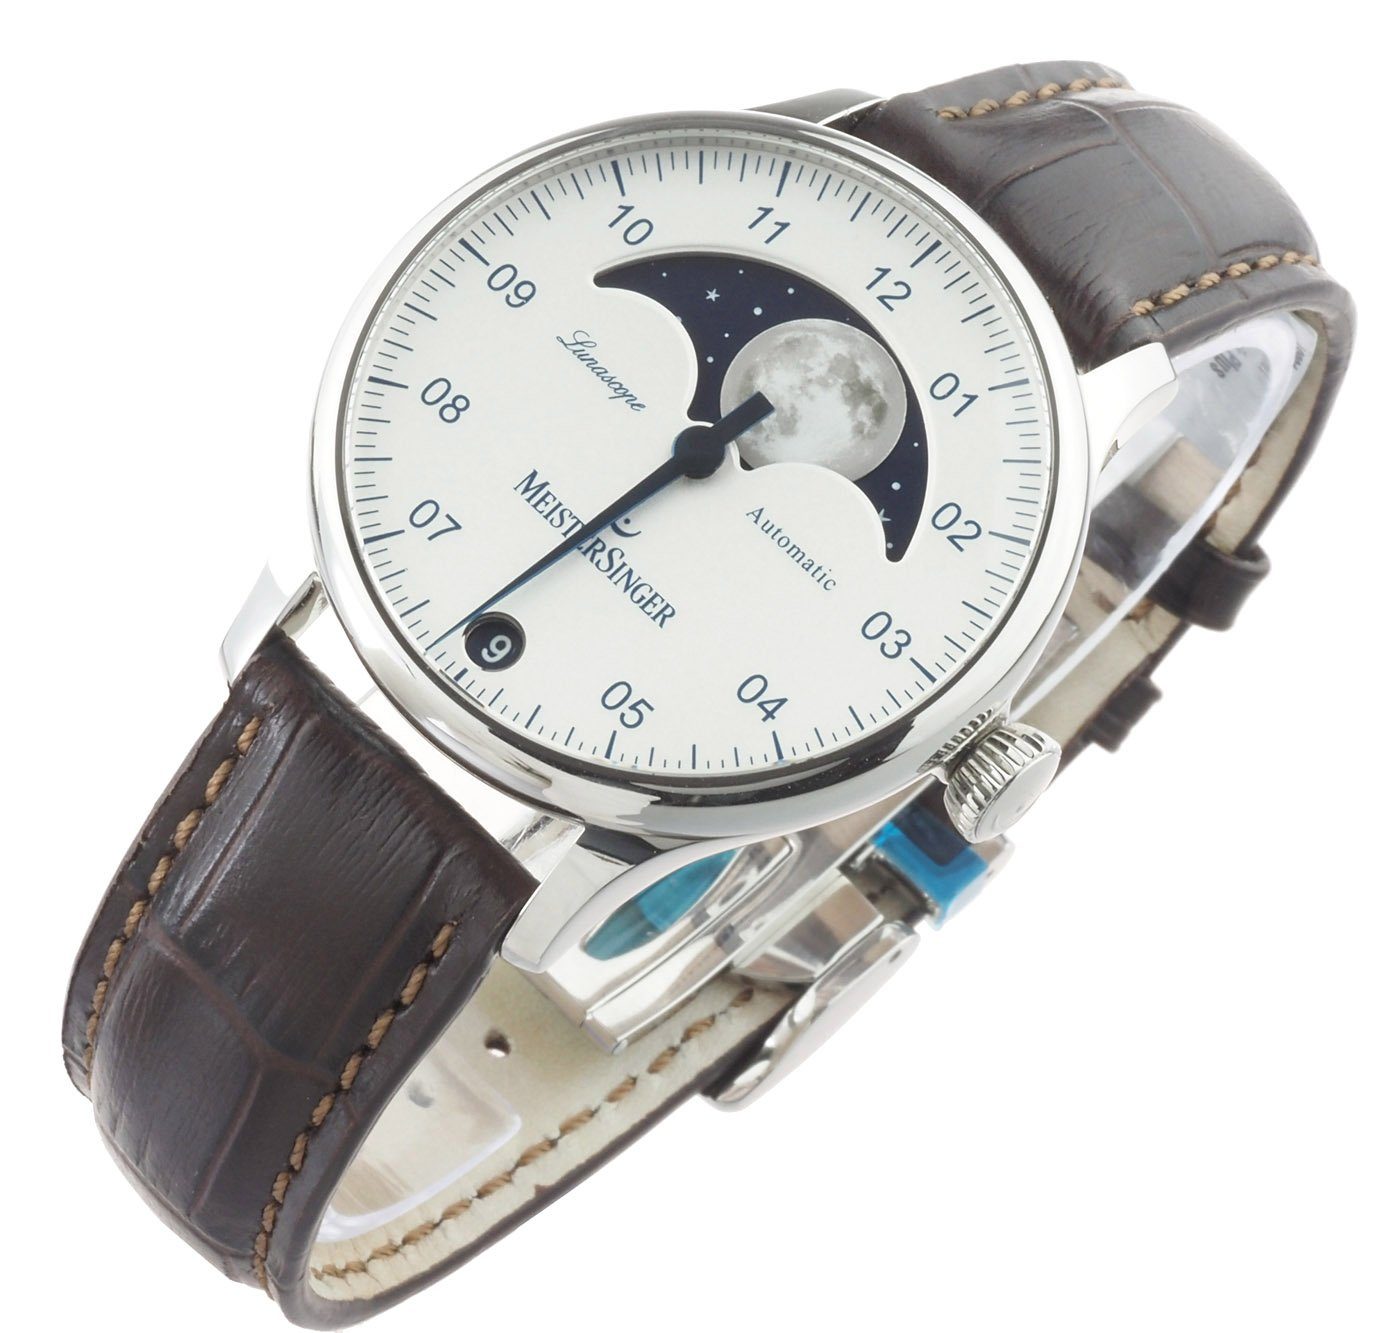 Automatik Einzeiger Uhr, Meistersinger Lunascope LS901 Automatikuhr Uhr Herren Mondphasenanzeige